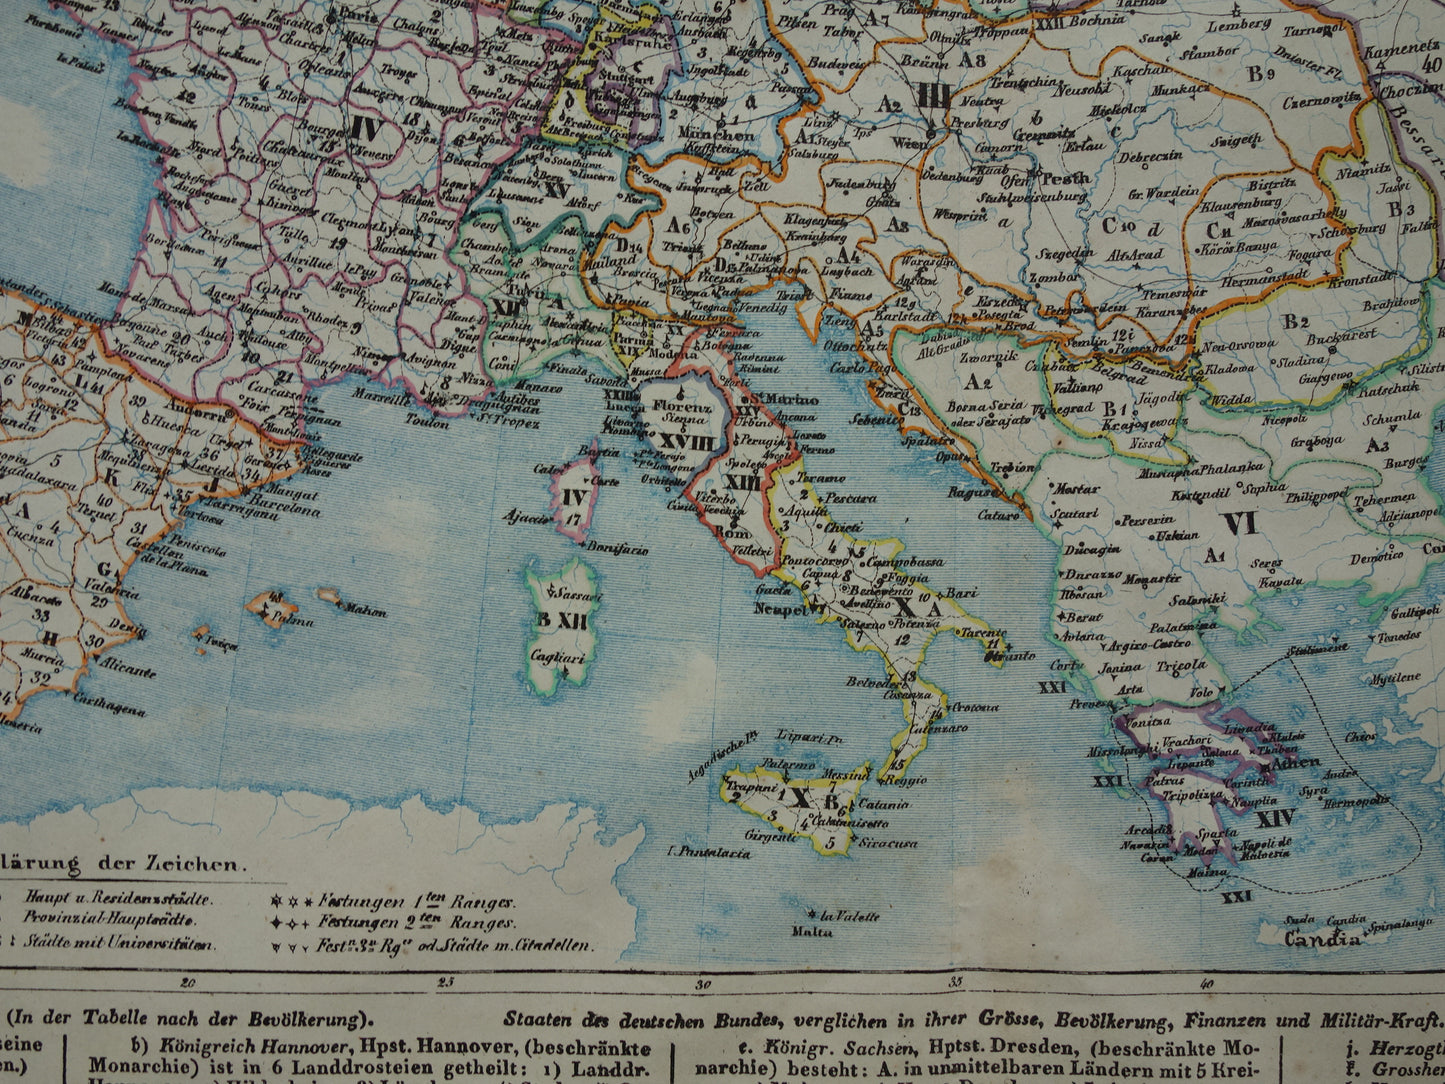 EUROPA grote oude militaire en politieke kaart van Europa uit 1840 originele antieke landkaart Europees continent vintage print